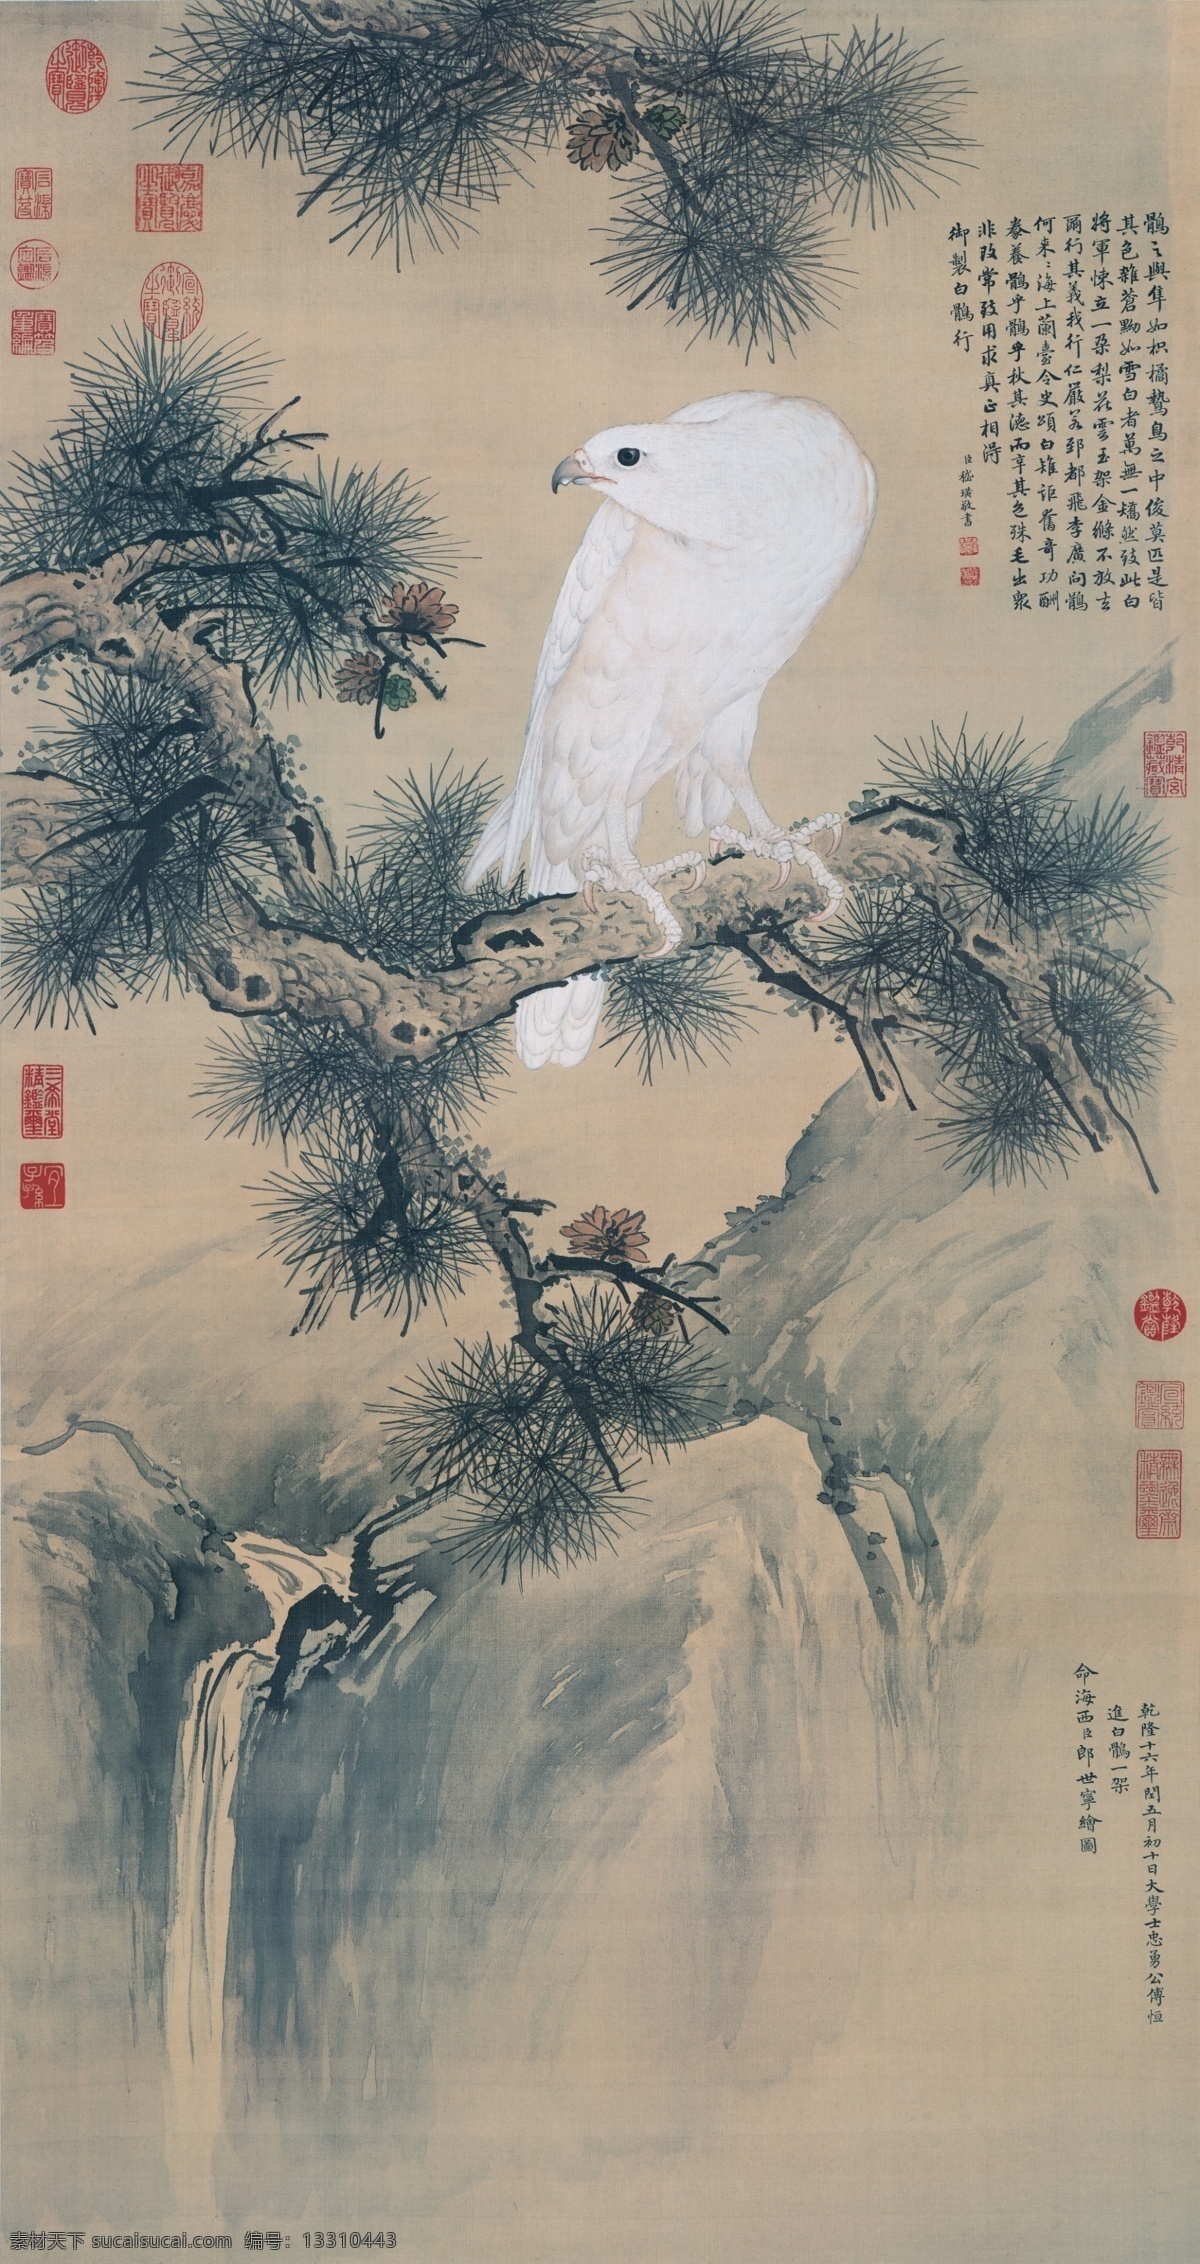 清 郎世宁白鹰图 复制画 中国画 古画 文化艺术 绘画书法